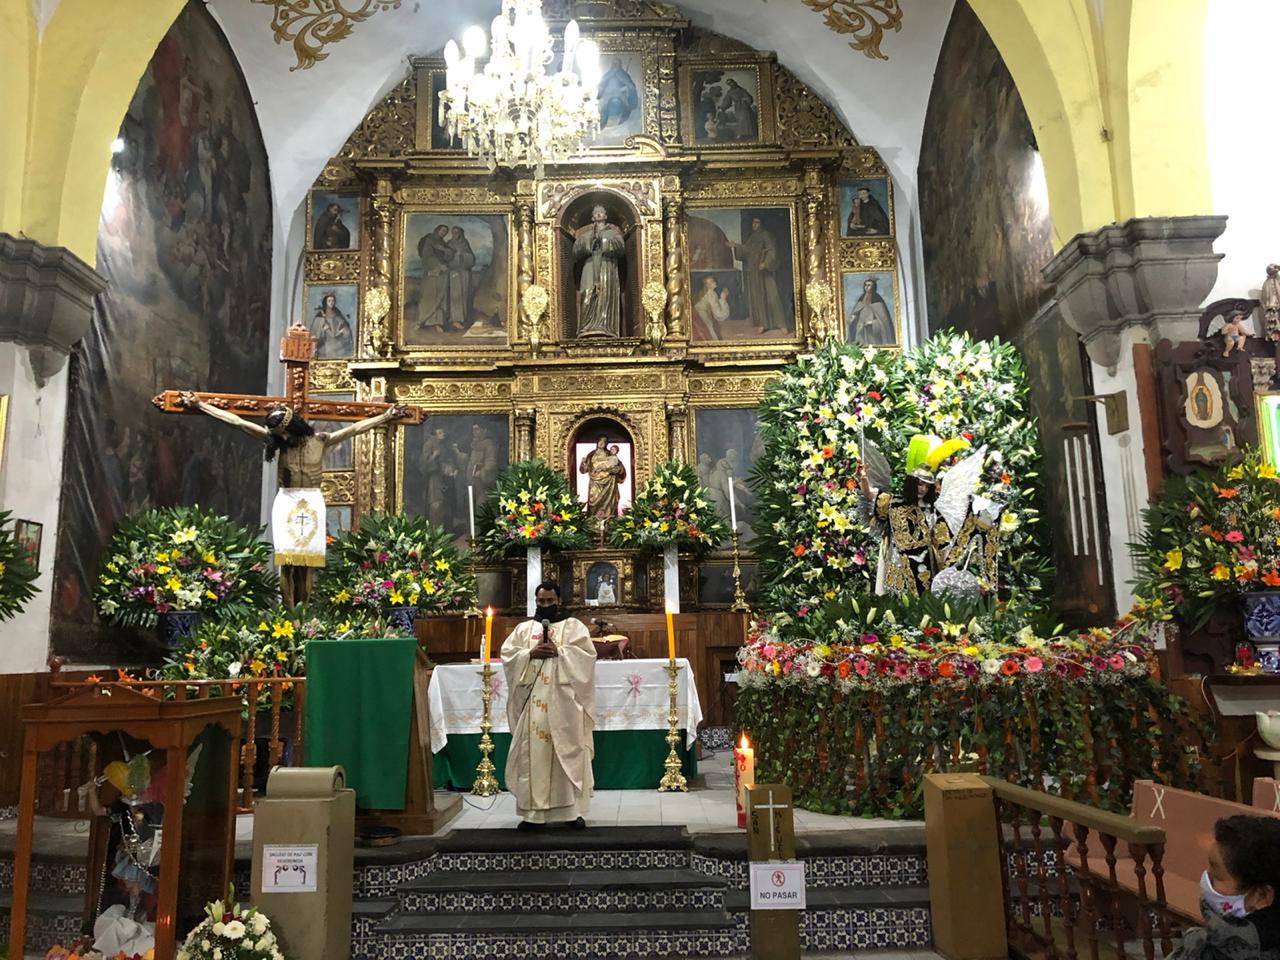 Restringen acceso a fieles durante festejos de San Miguel en Huejotzingo